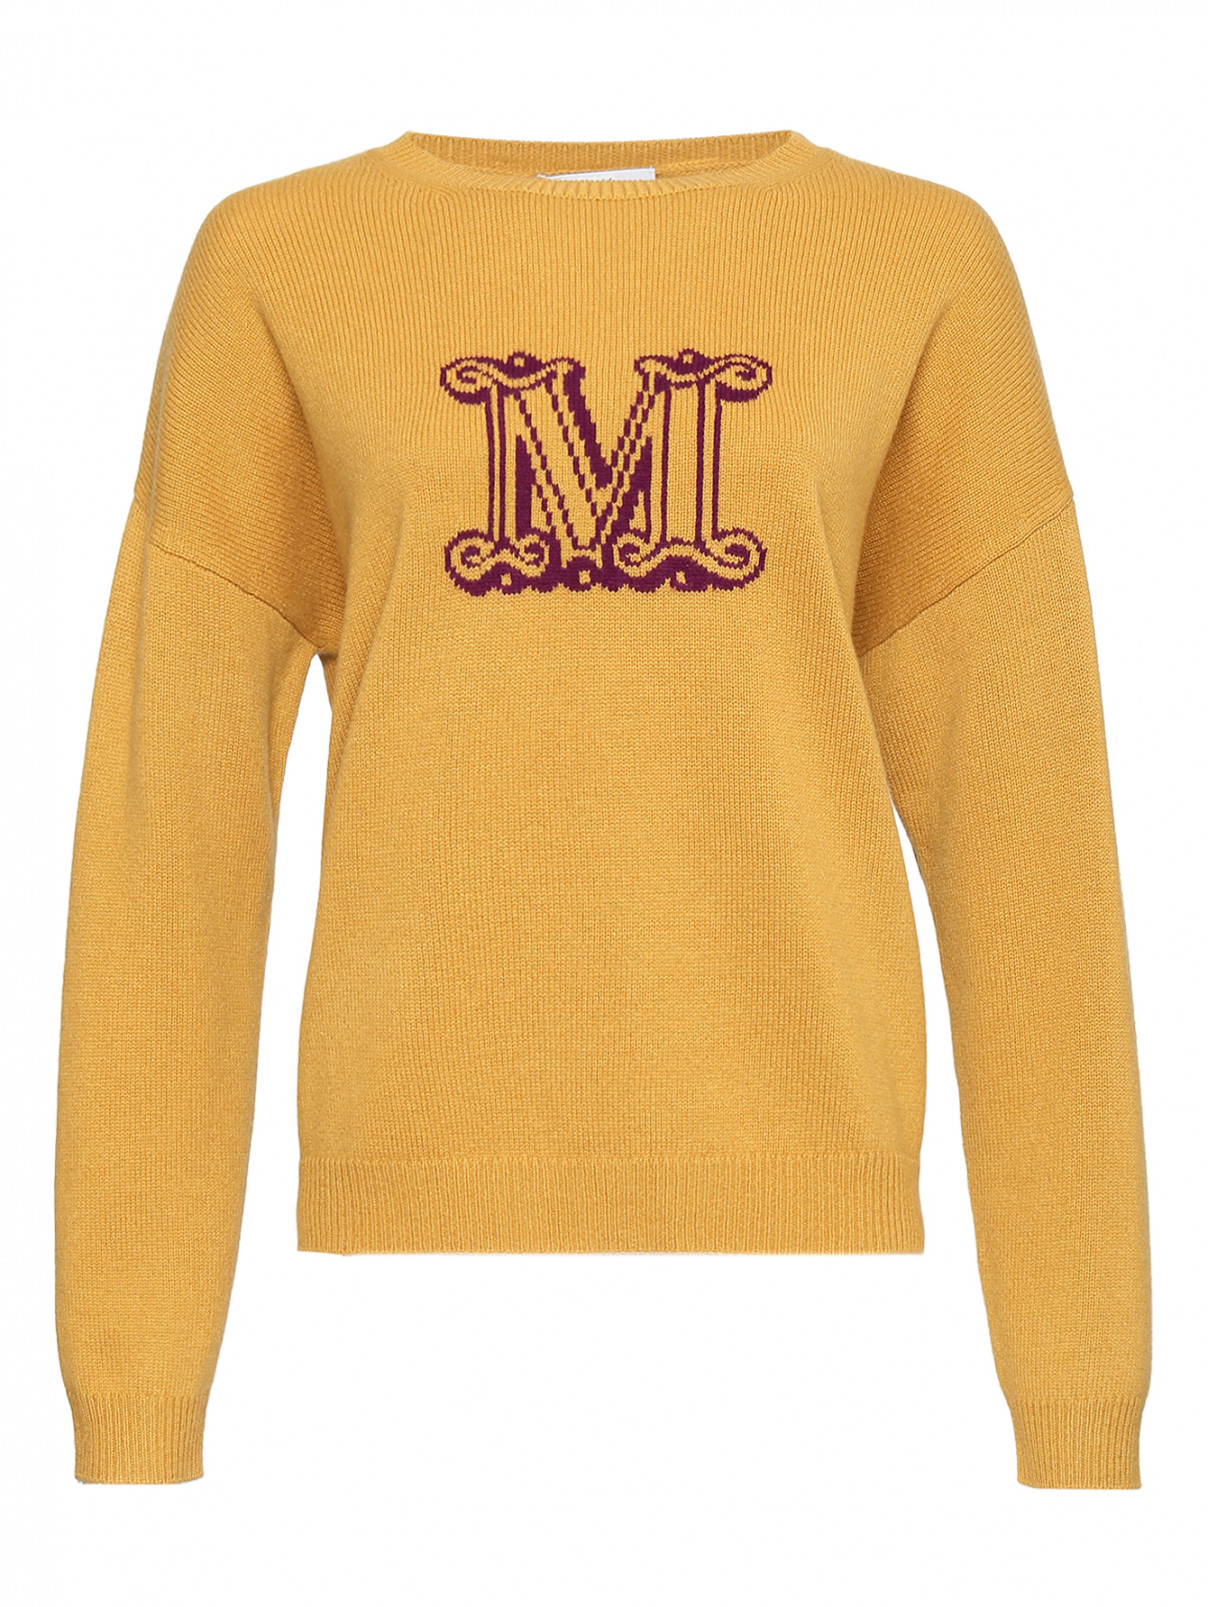 Джемпер из кашемира с логотипом Max Mara  –  Общий вид  – Цвет:  Желтый